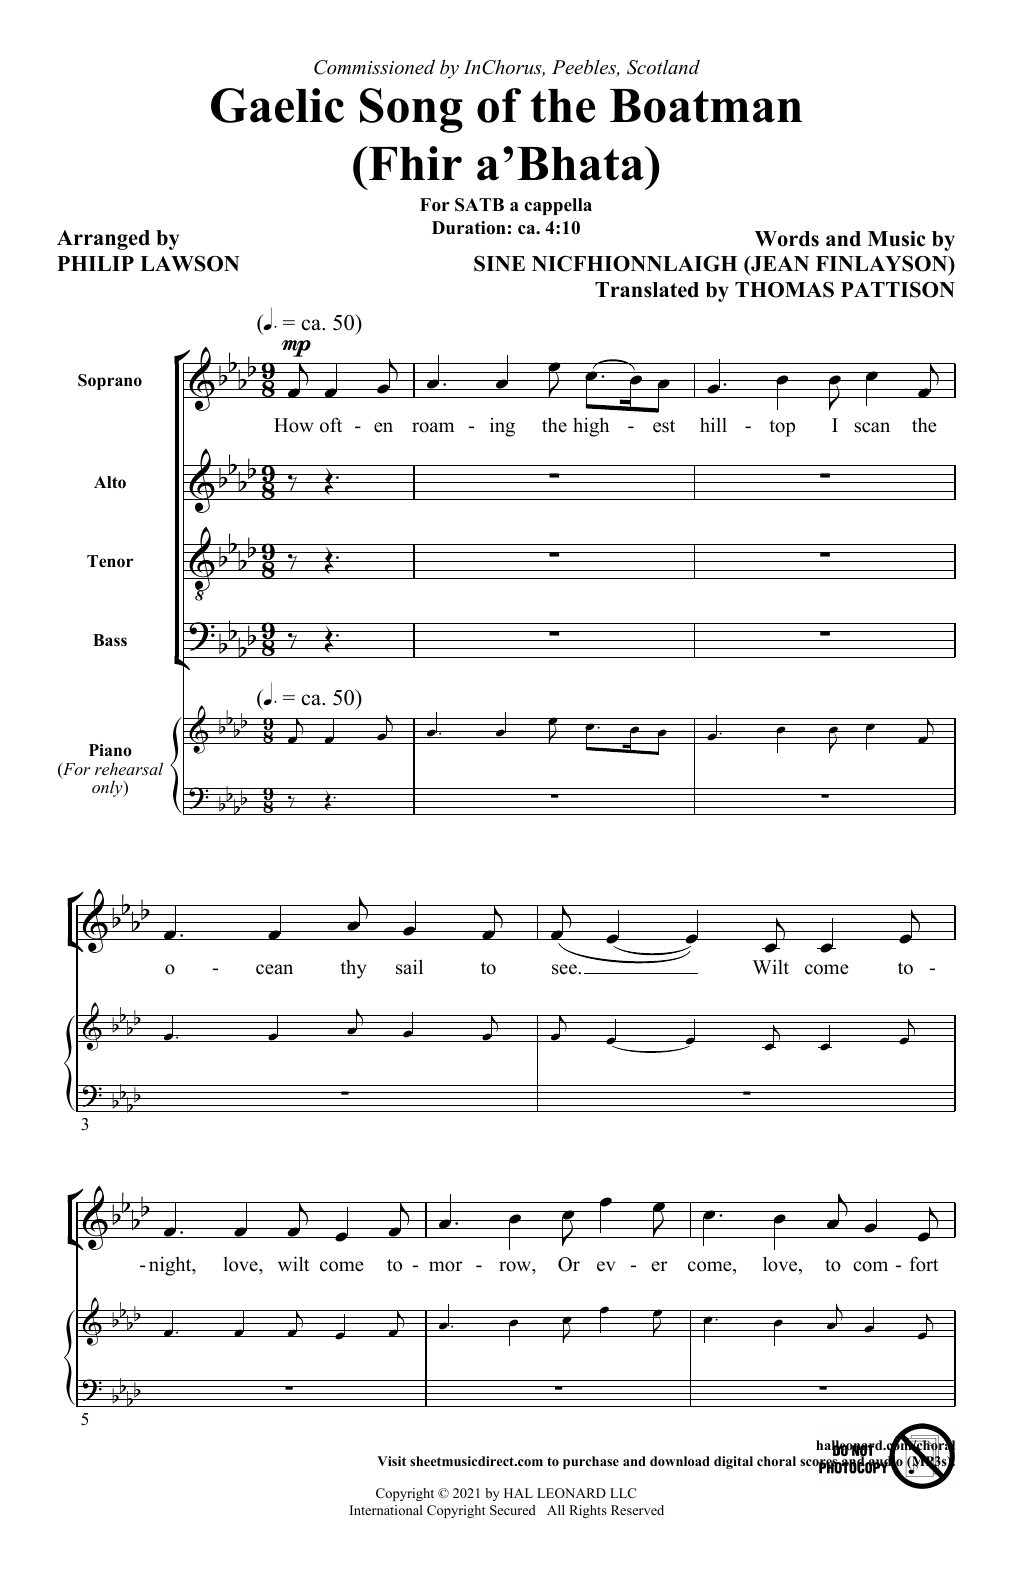 Sìne NicFhionnlaigh (Jean Finlayson) Gaelic Song Of The Boatman (Fhir A'bhata) (arr. Philip Lawson) Sheet Music Notes & Chords for SATB Choir - Download or Print PDF